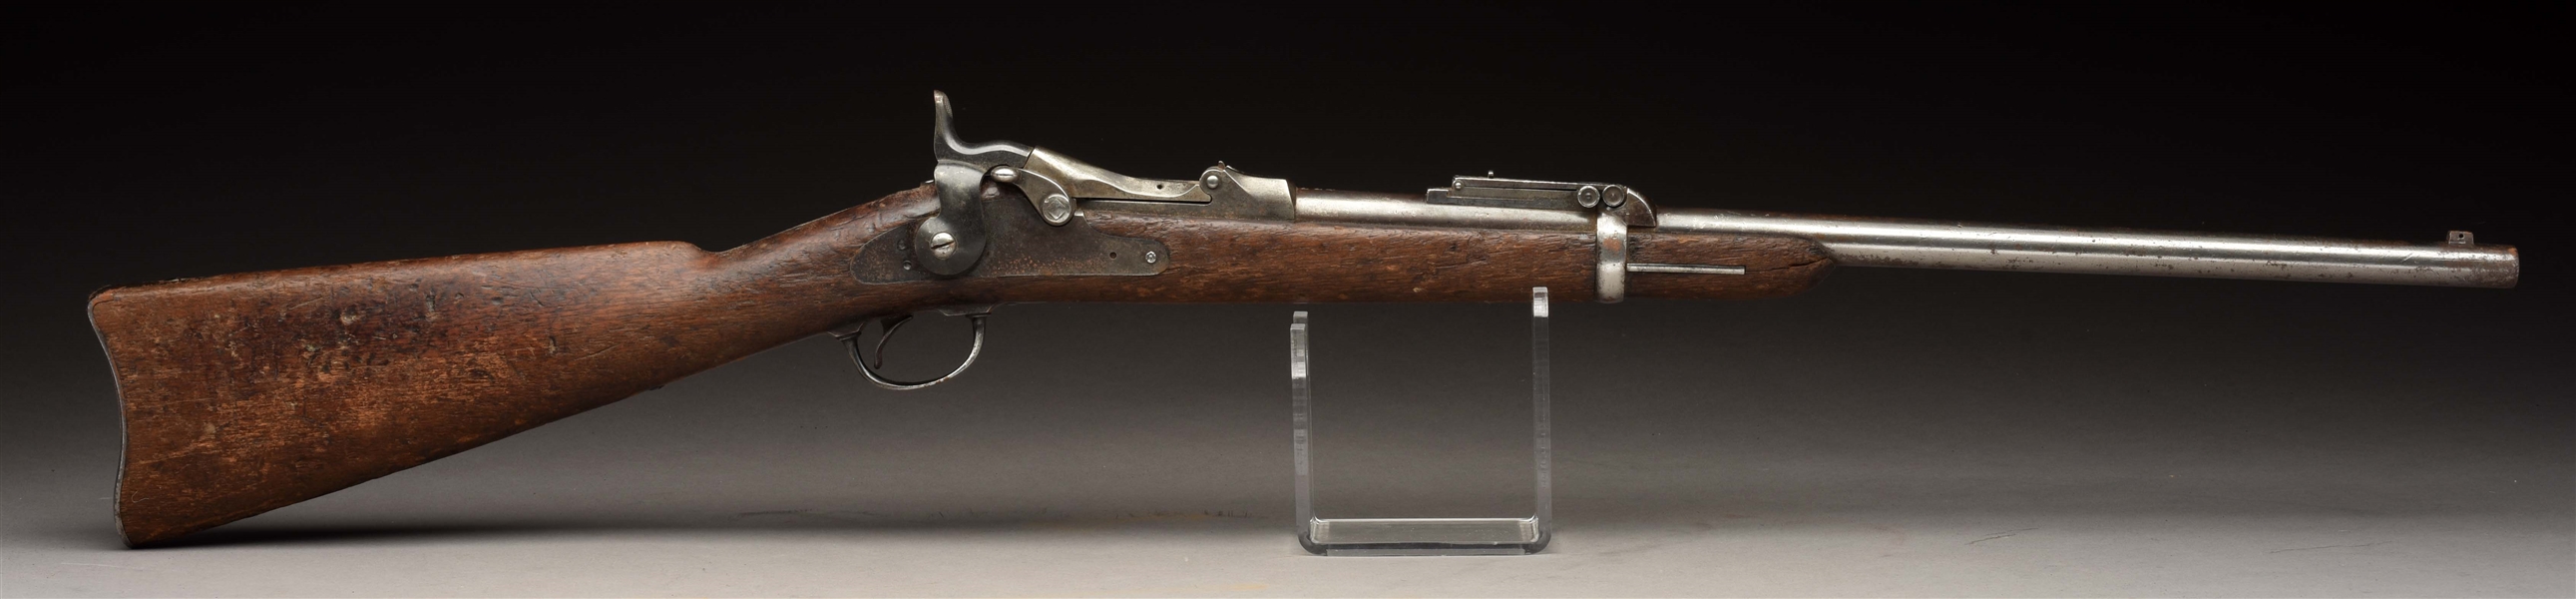 U.S. MODEL 1884 TRAPDOOR CARBINE "FOX" MARKED MOVIE PROP GUN ATTRIBUTED TO AUDIE MURPHY.